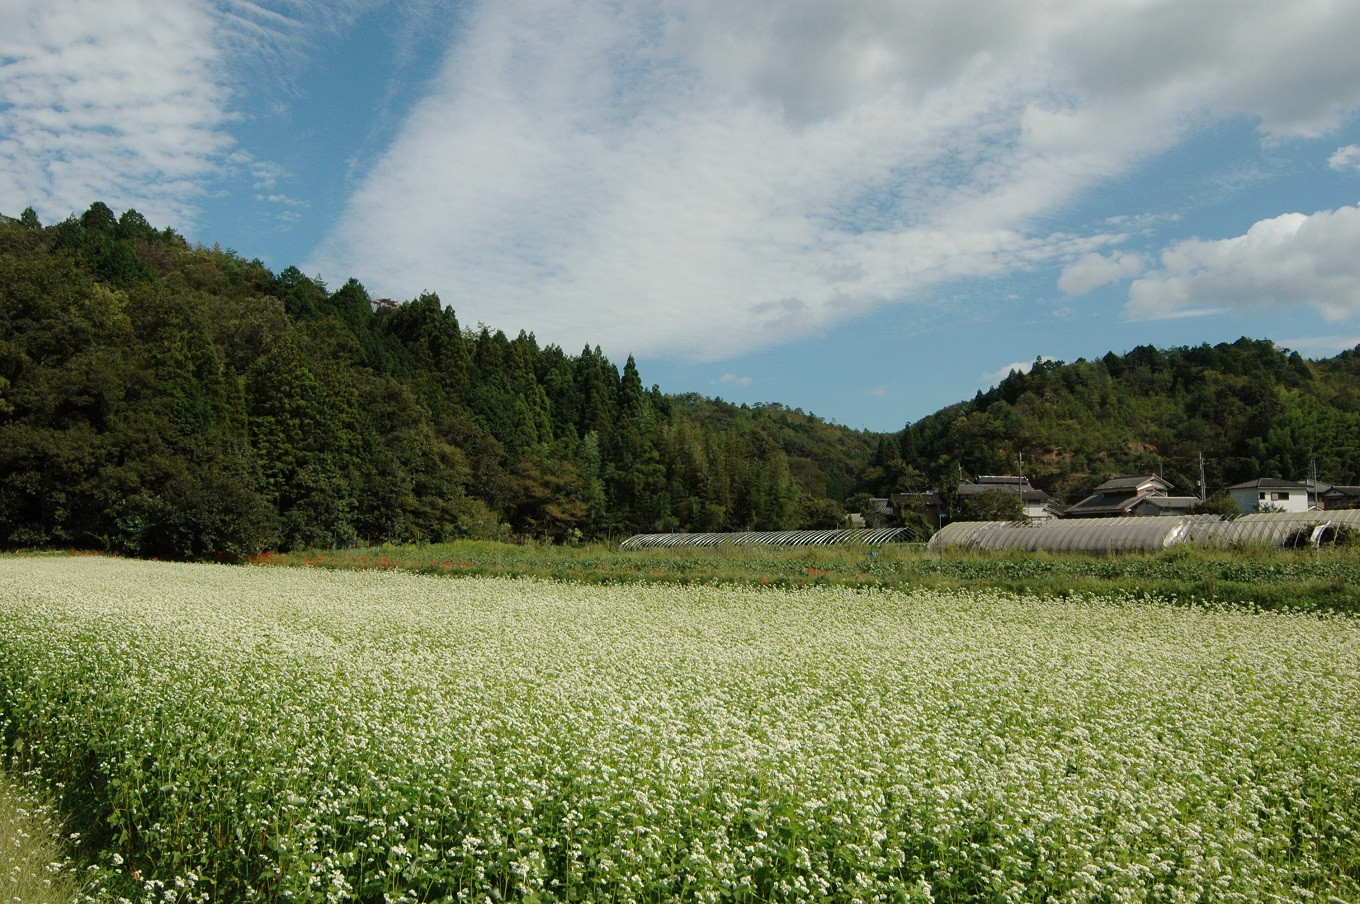 「瑞穂そば」の産地。一面に白い花が広がる蕎麦畑の美しい風景。